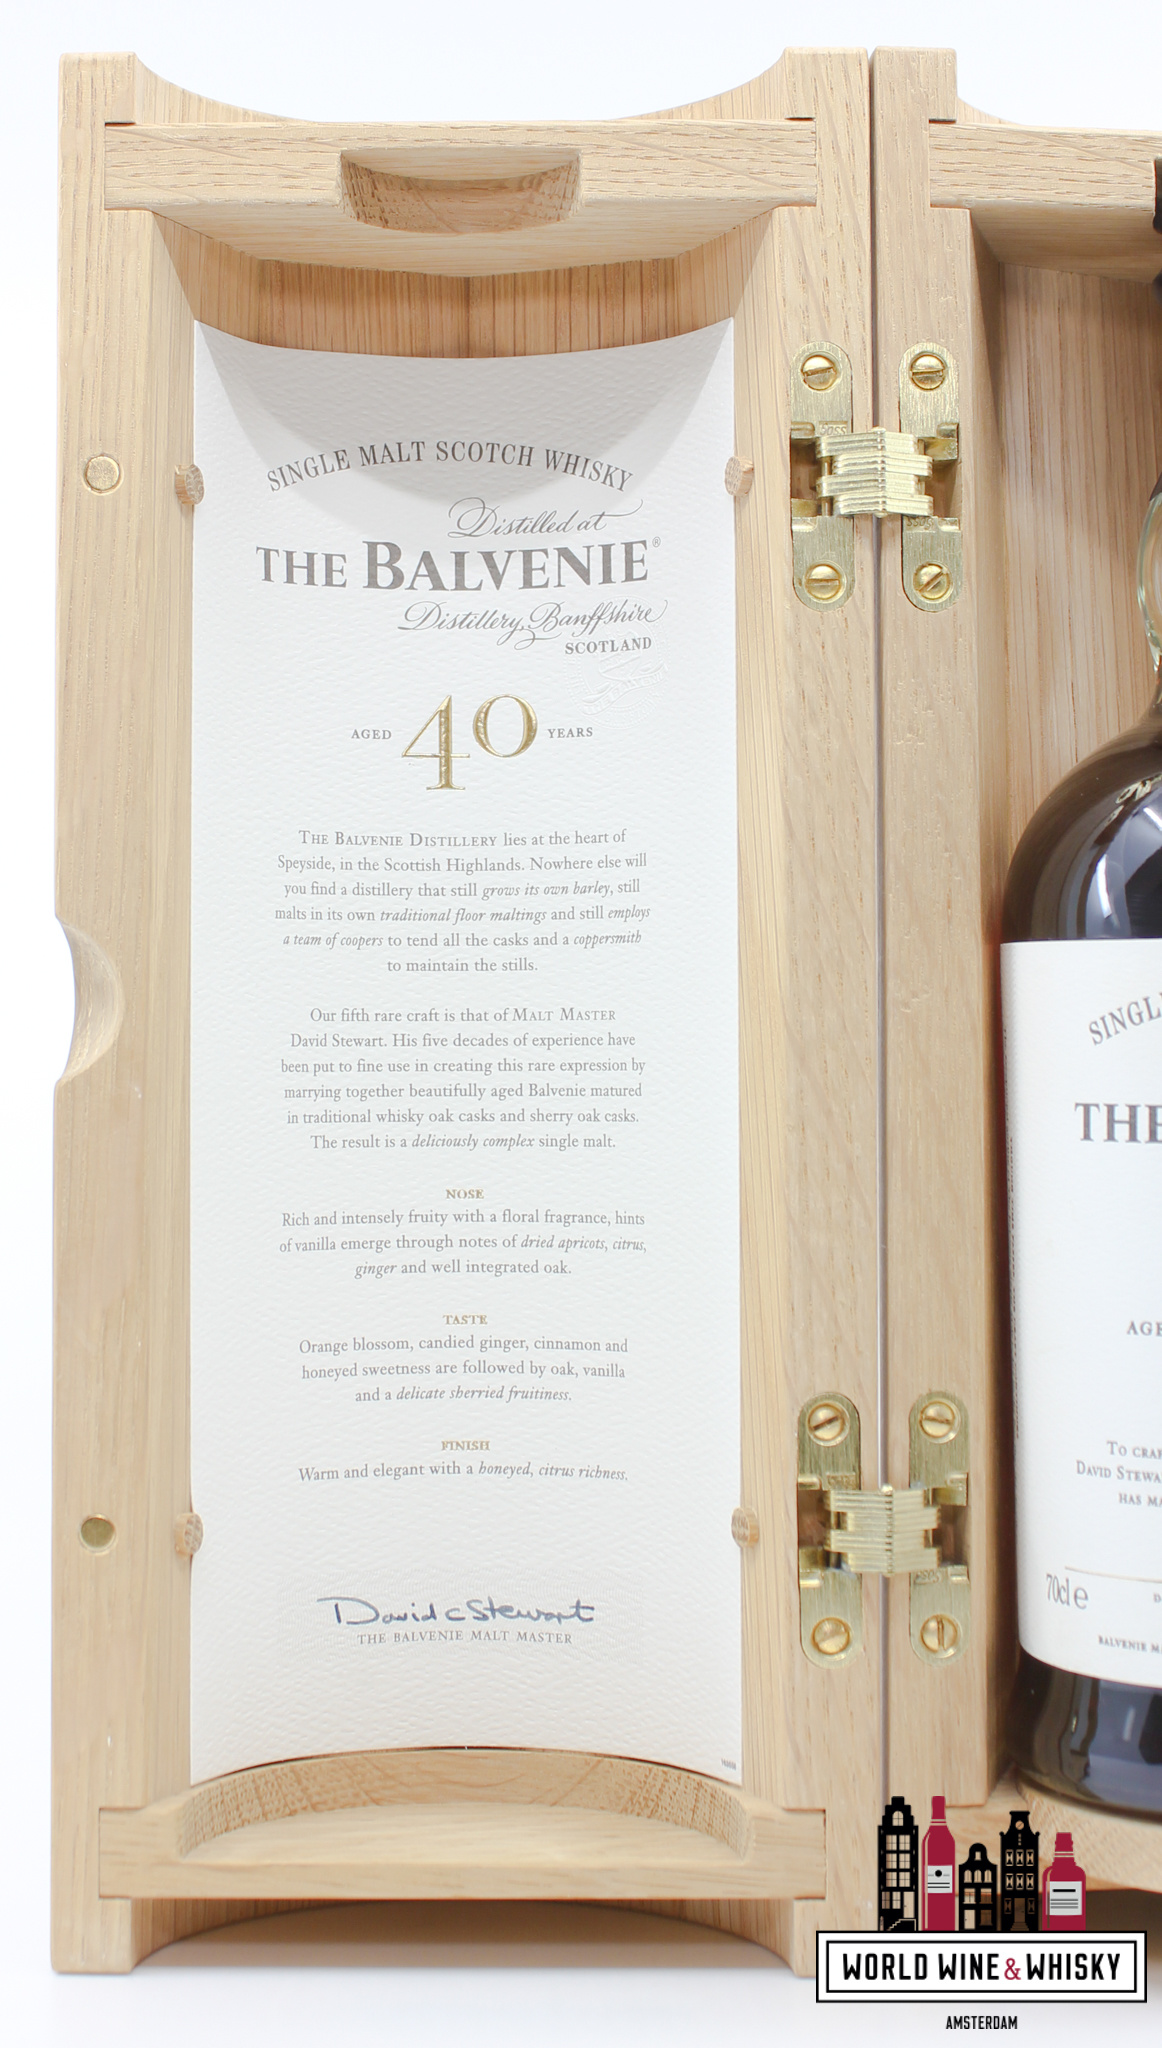 Balvenie The Balvenie 40 Years Old - Batch 7 48.5% (full set)